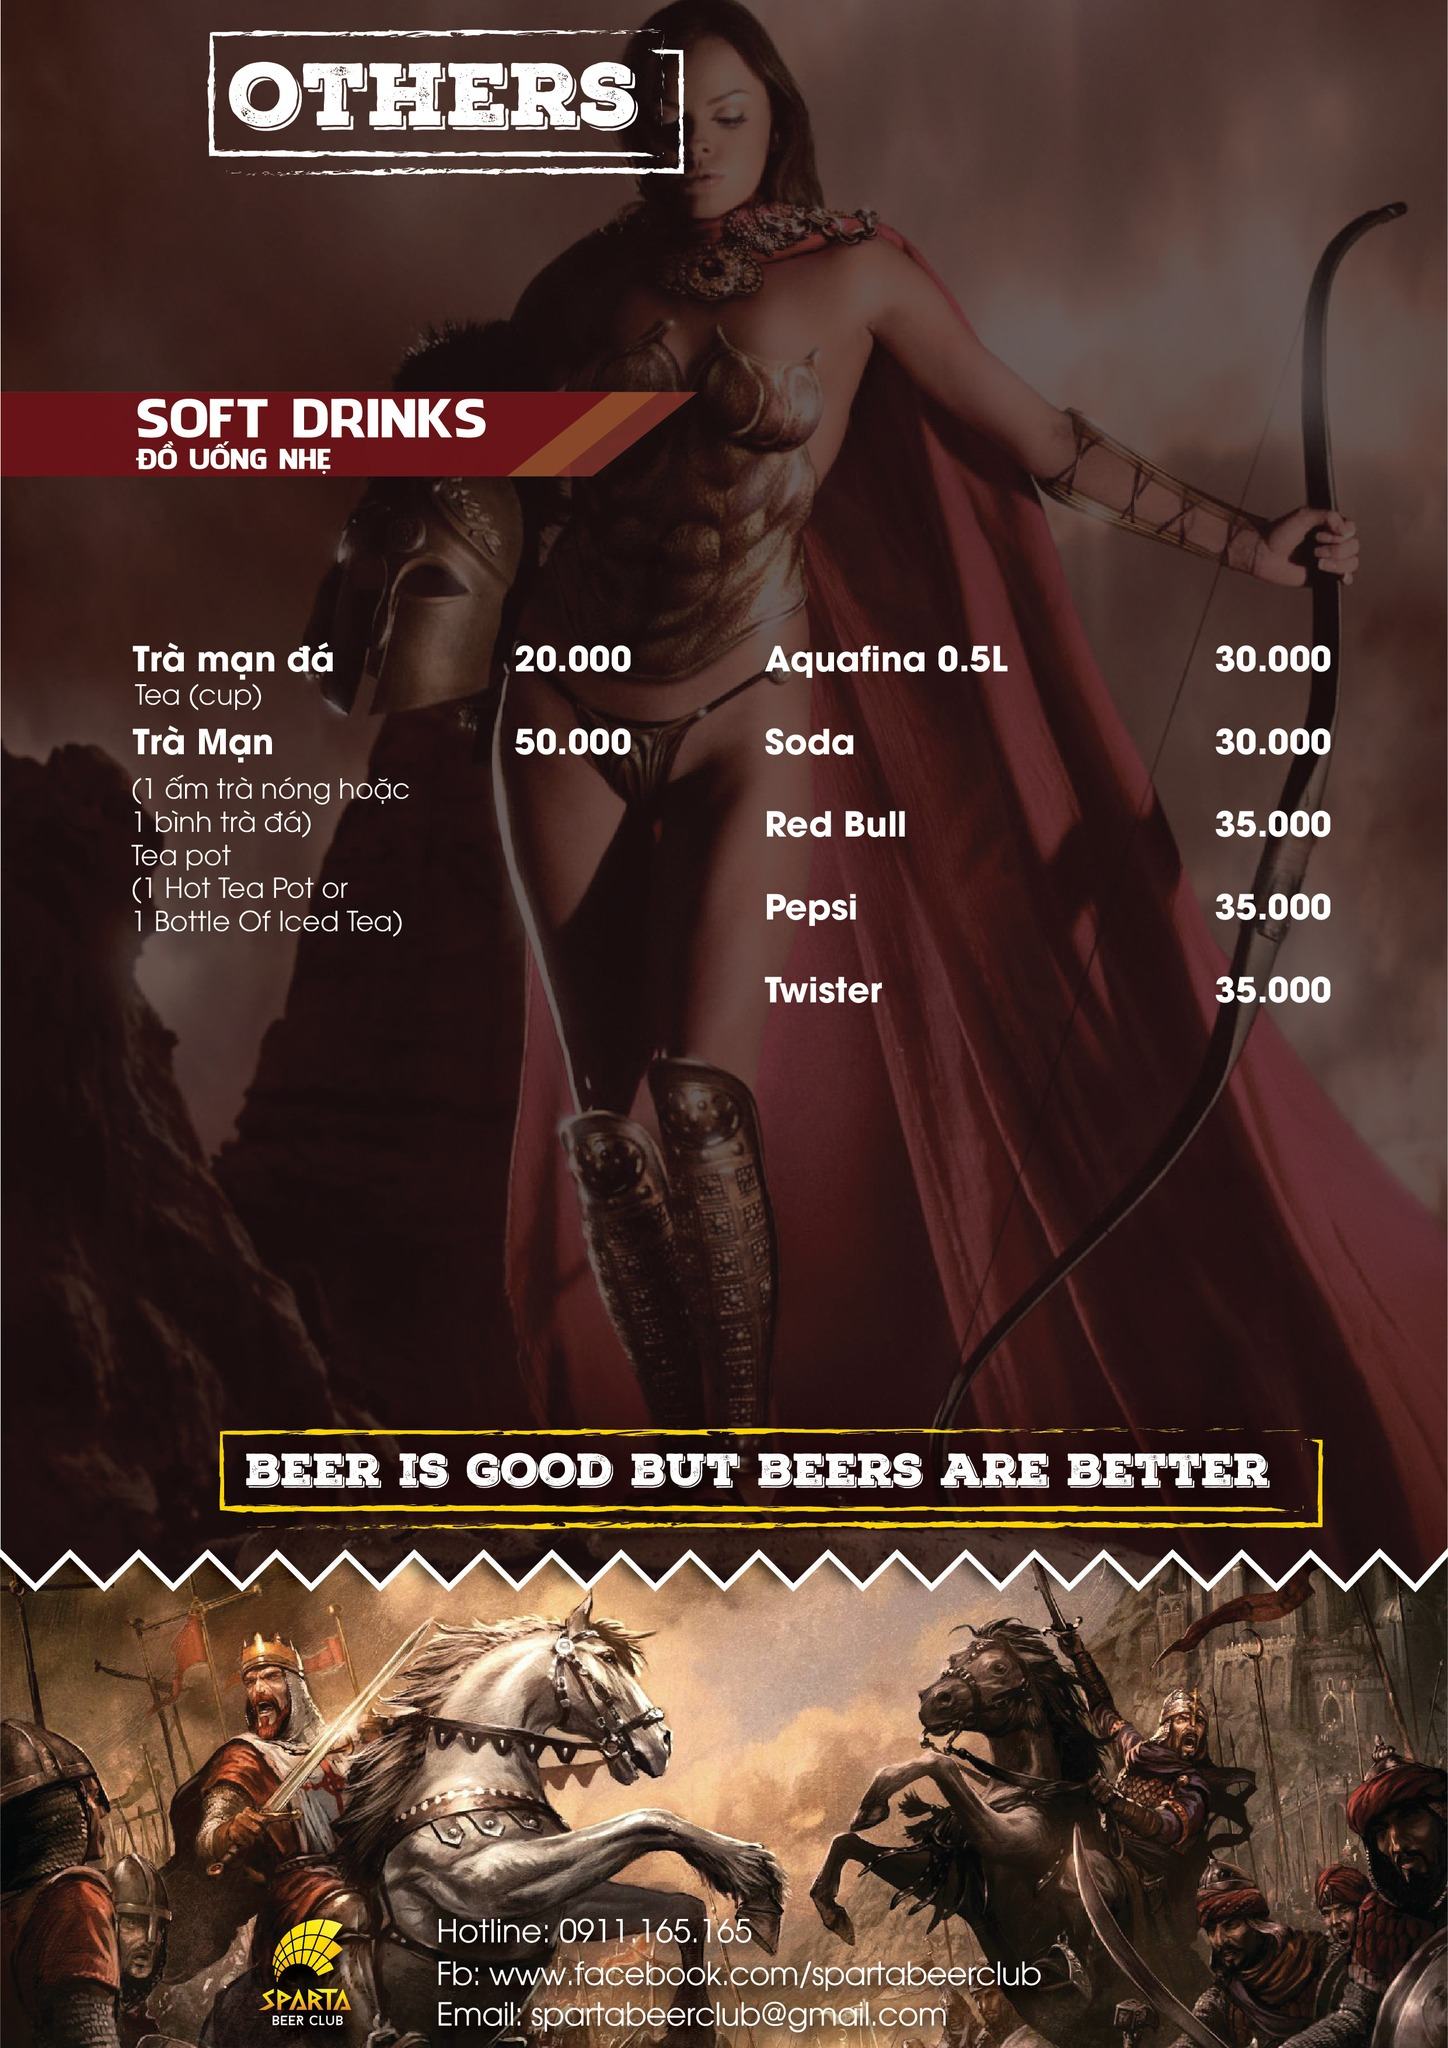 Sparta Beer Club Thái Hà - Thiên đường bia club cho giới trẻ Hà Thành